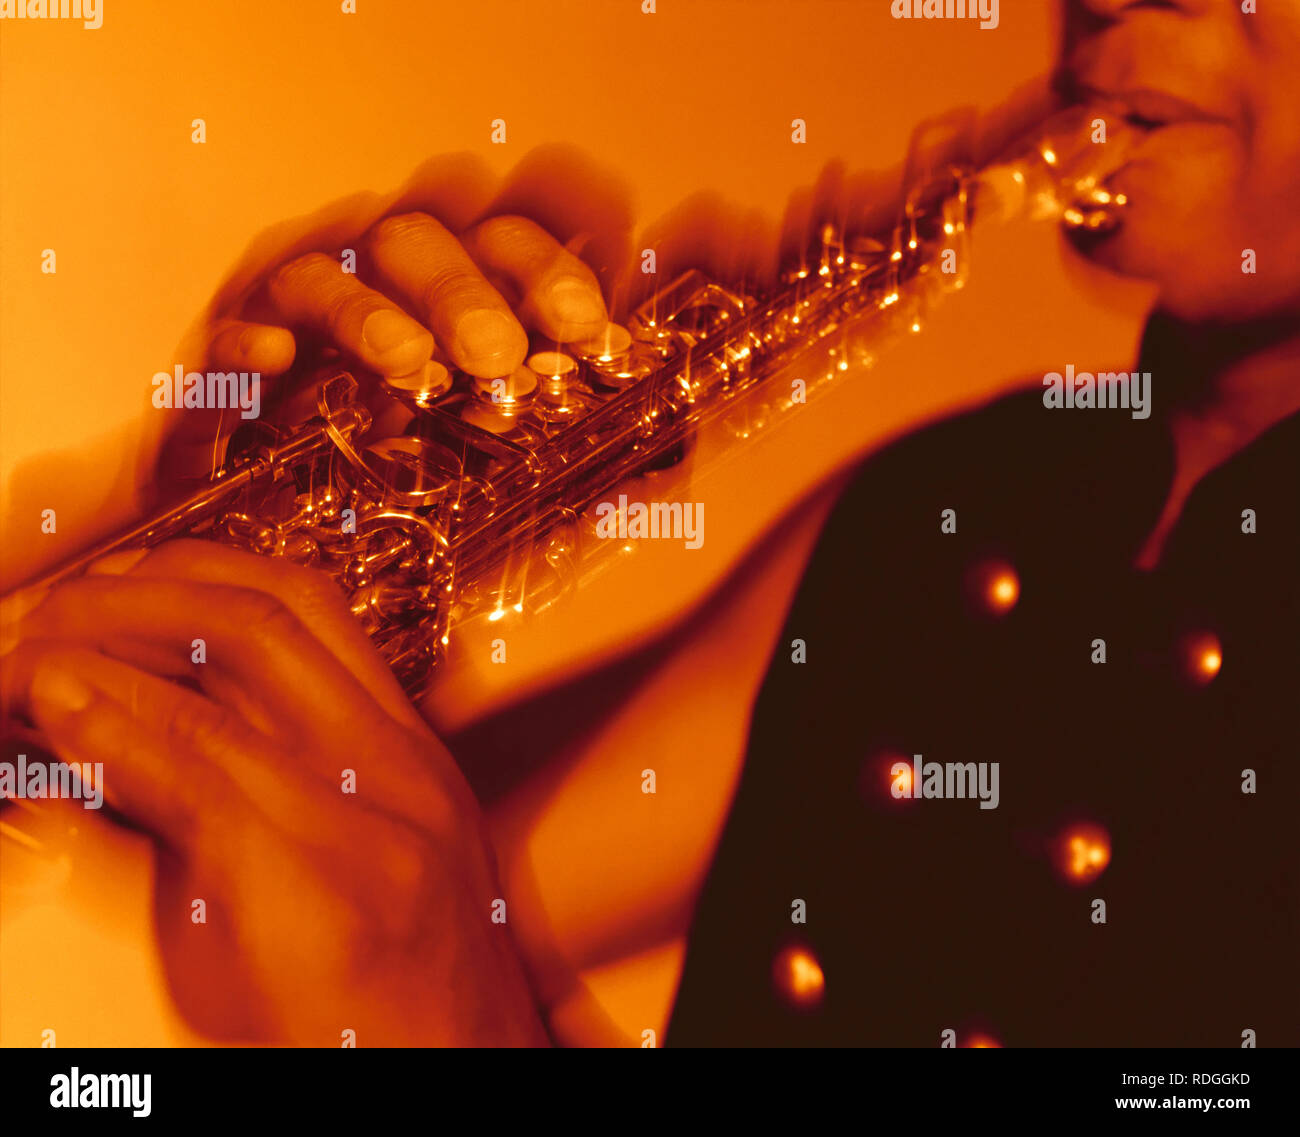 Musicista giocando sax tenore che mostra il movimento delle dita premendo i tasti Foto Stock